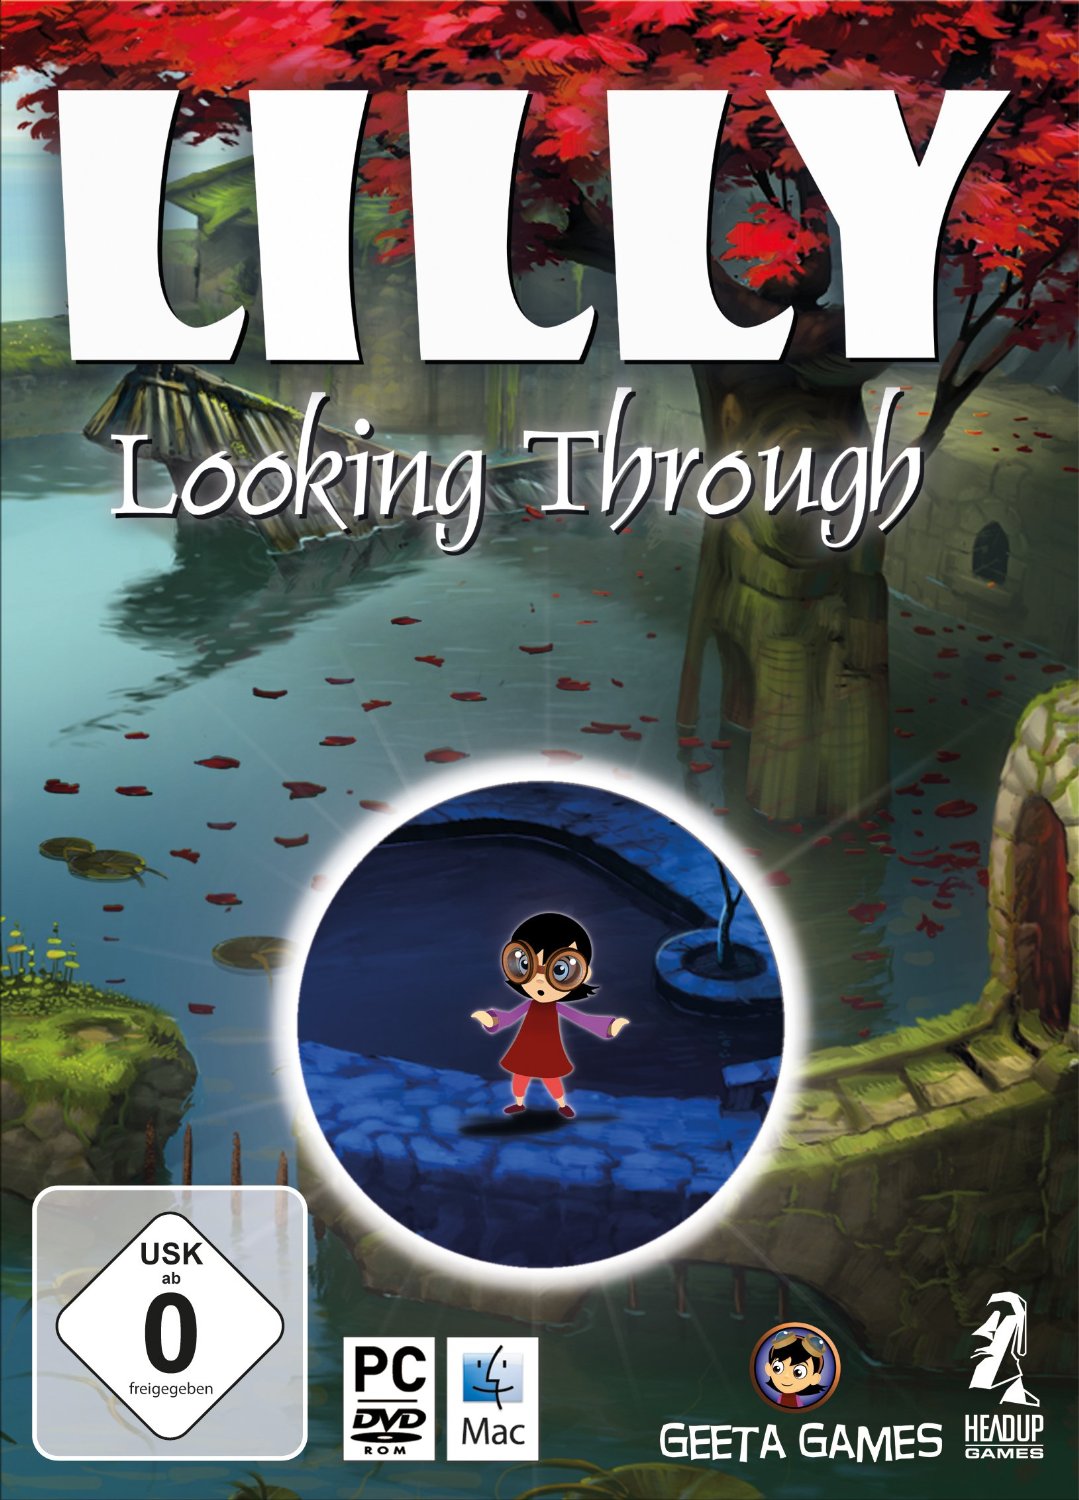 Ein kleines Mädchen in rotem Kleid mit einer großen Brille steht in einer Wassedrlandschaft. Darüber der Schriftzug "Lilly Looking Through".